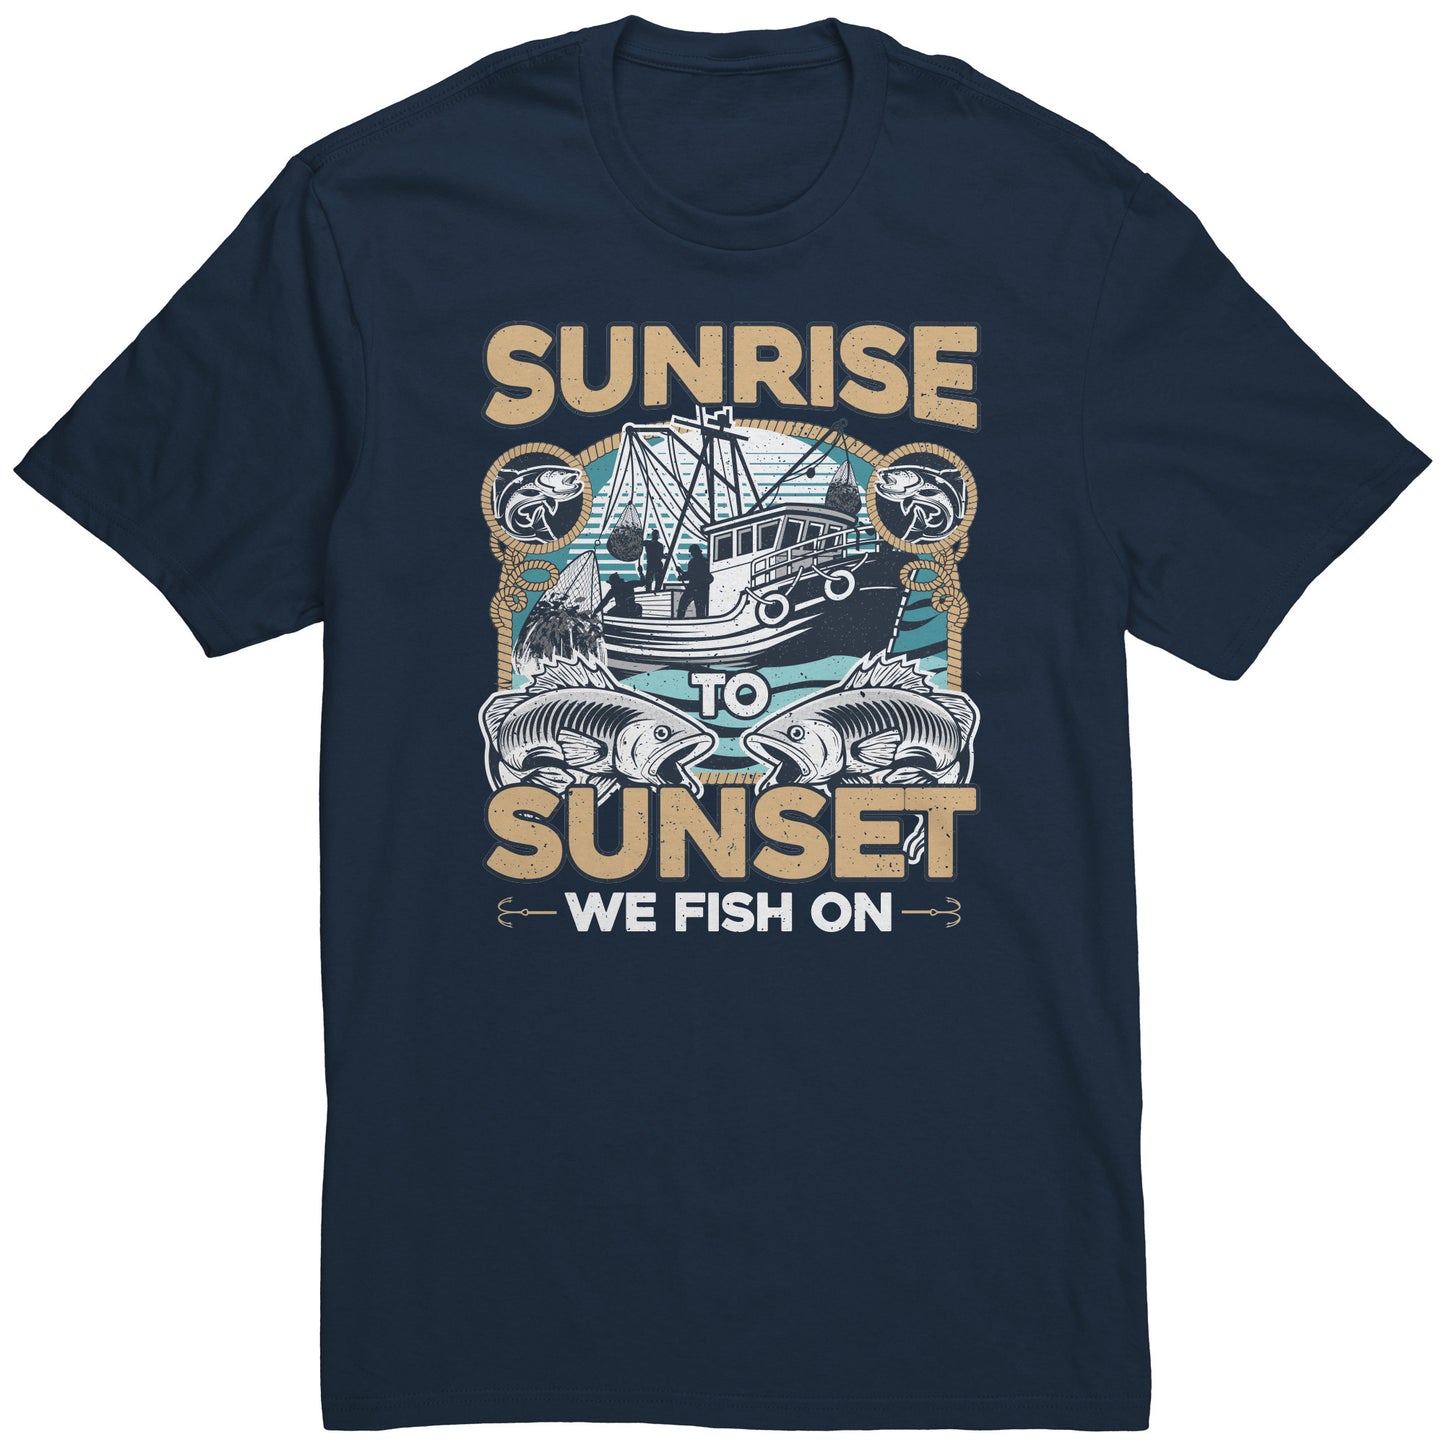 Sunrise To Sunset We Fish On - Fishermen Fishing Crew T-Shirt